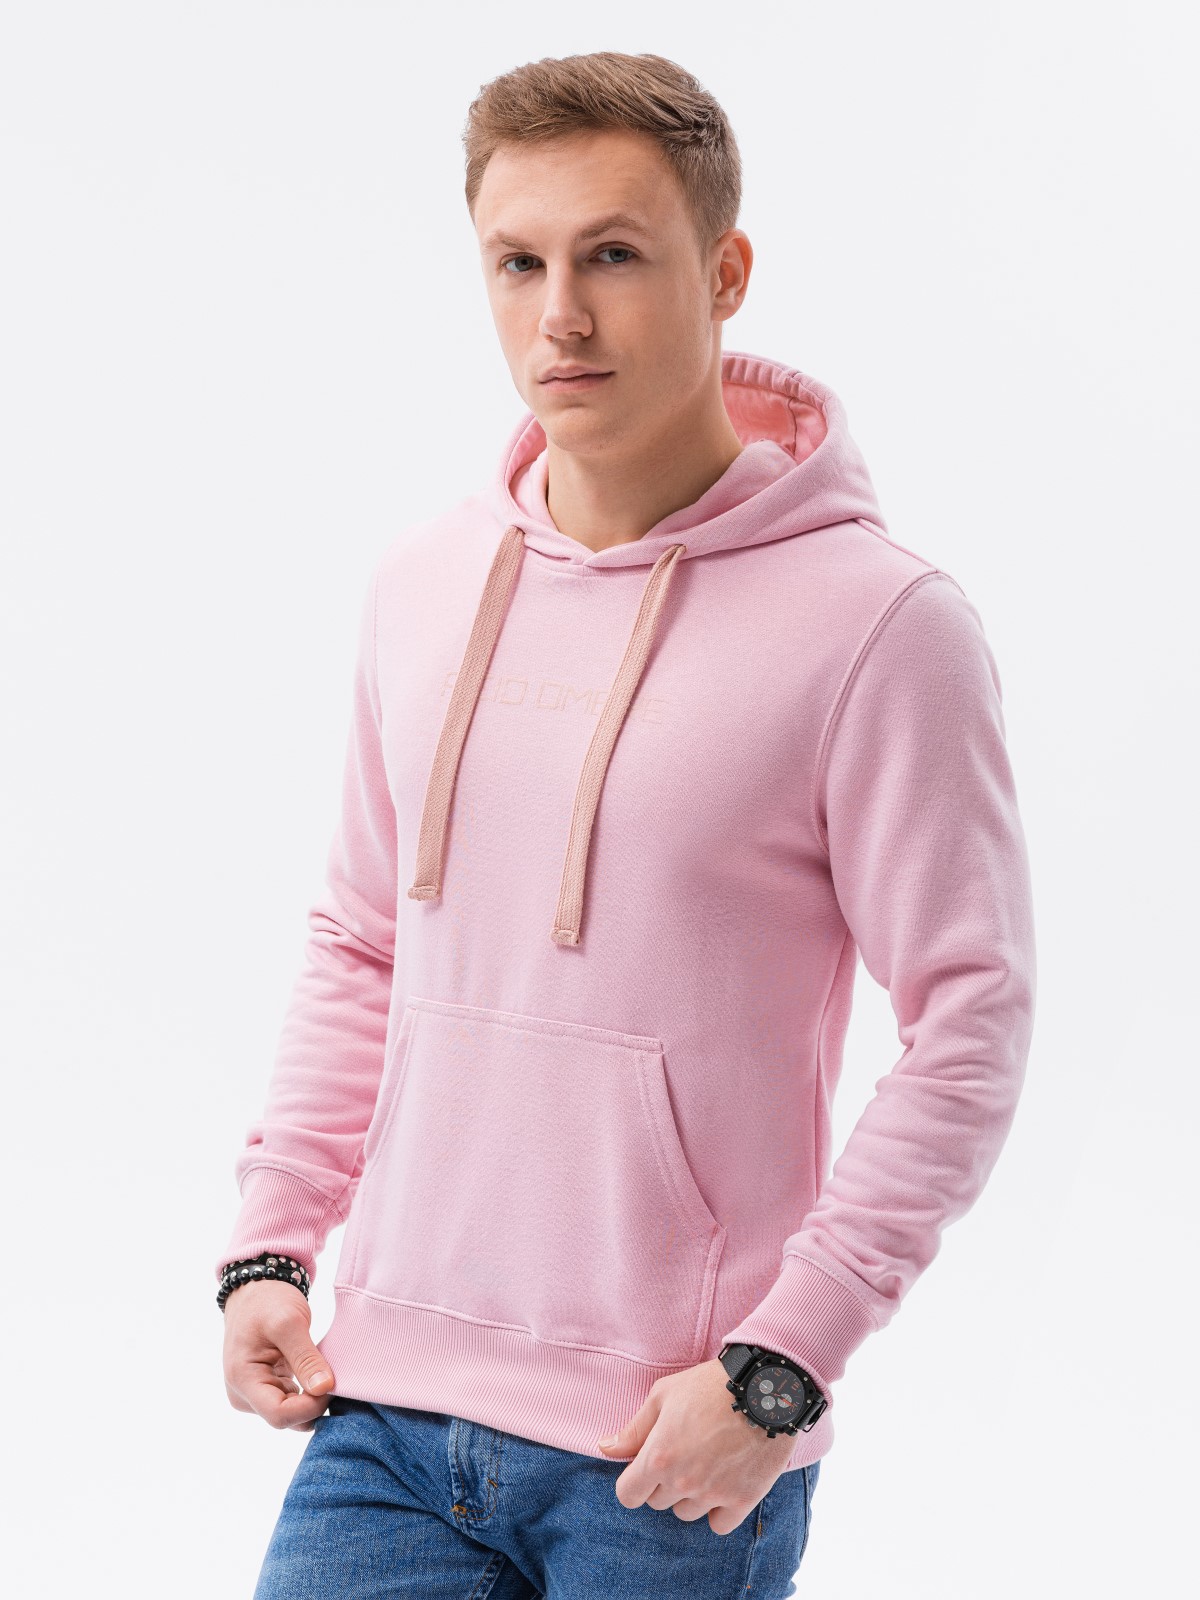 Bluza męska w mocnych kolorach B1351 - różowa - S Ombre Clothing